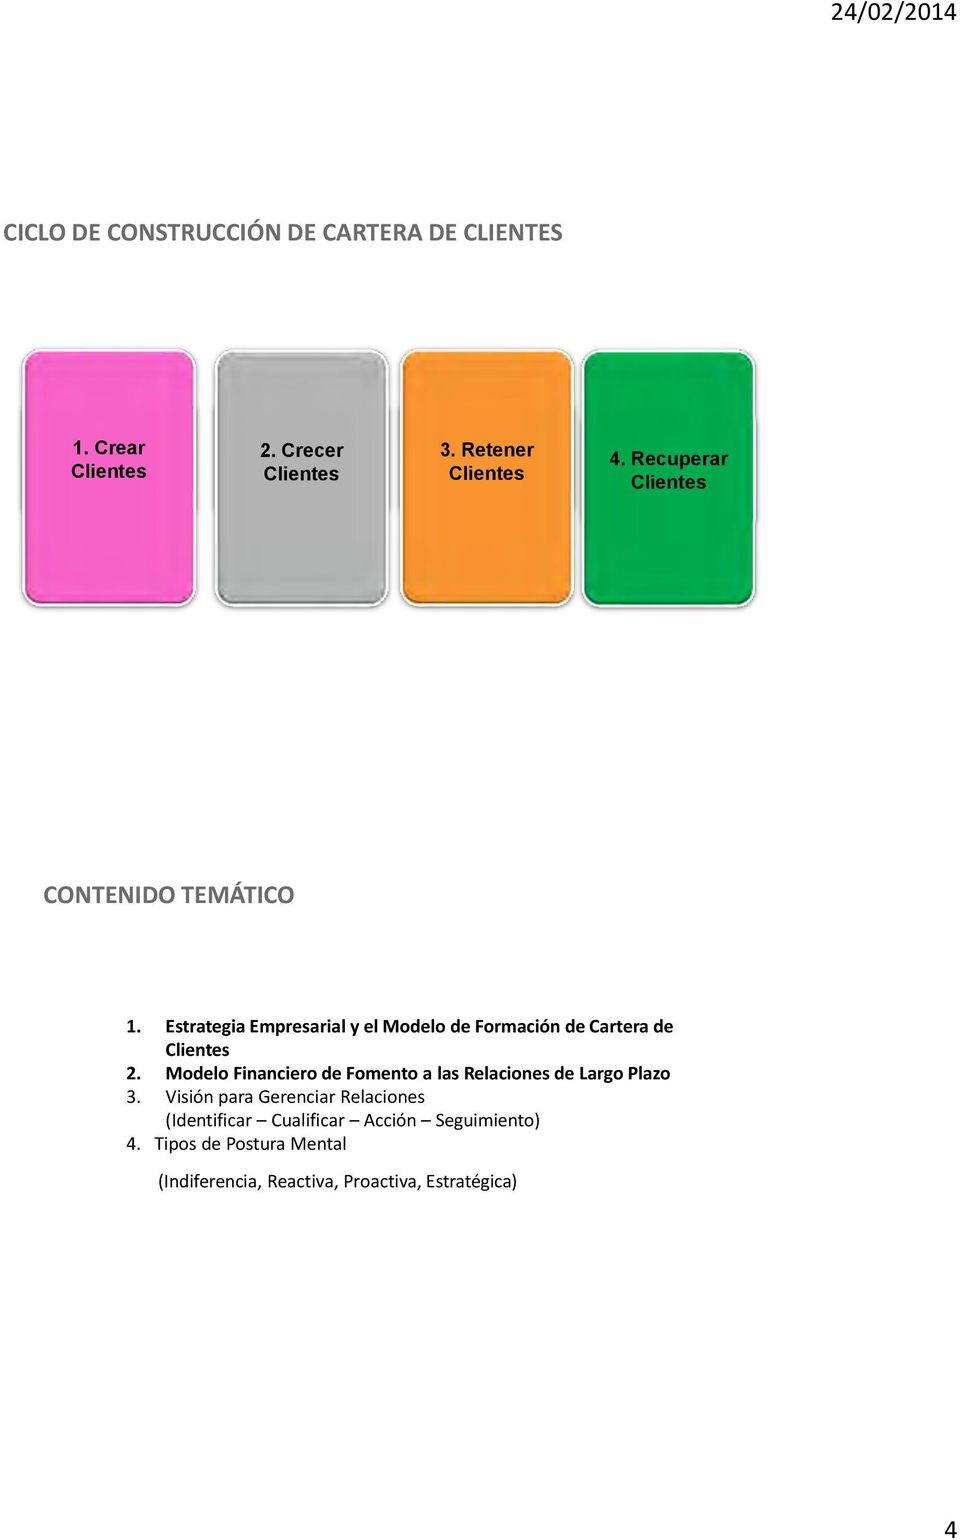 Modelo Financiero de Fomento a las Relaciones de Largo Plazo 3.